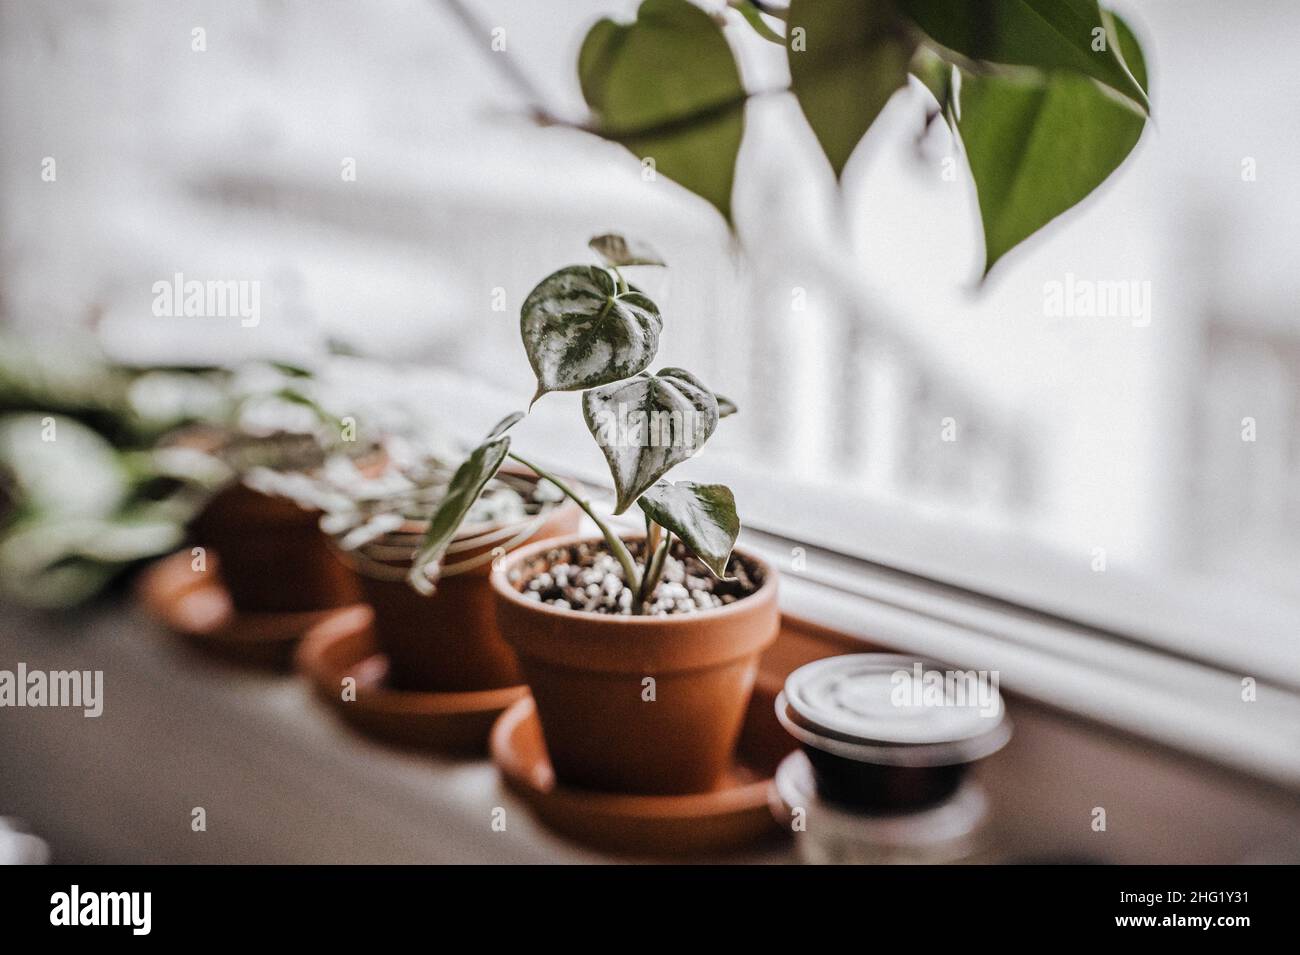 petit brandtianum de philodendron dans un pot en terre cuite sur le rebord de la fenêtre Banque D'Images